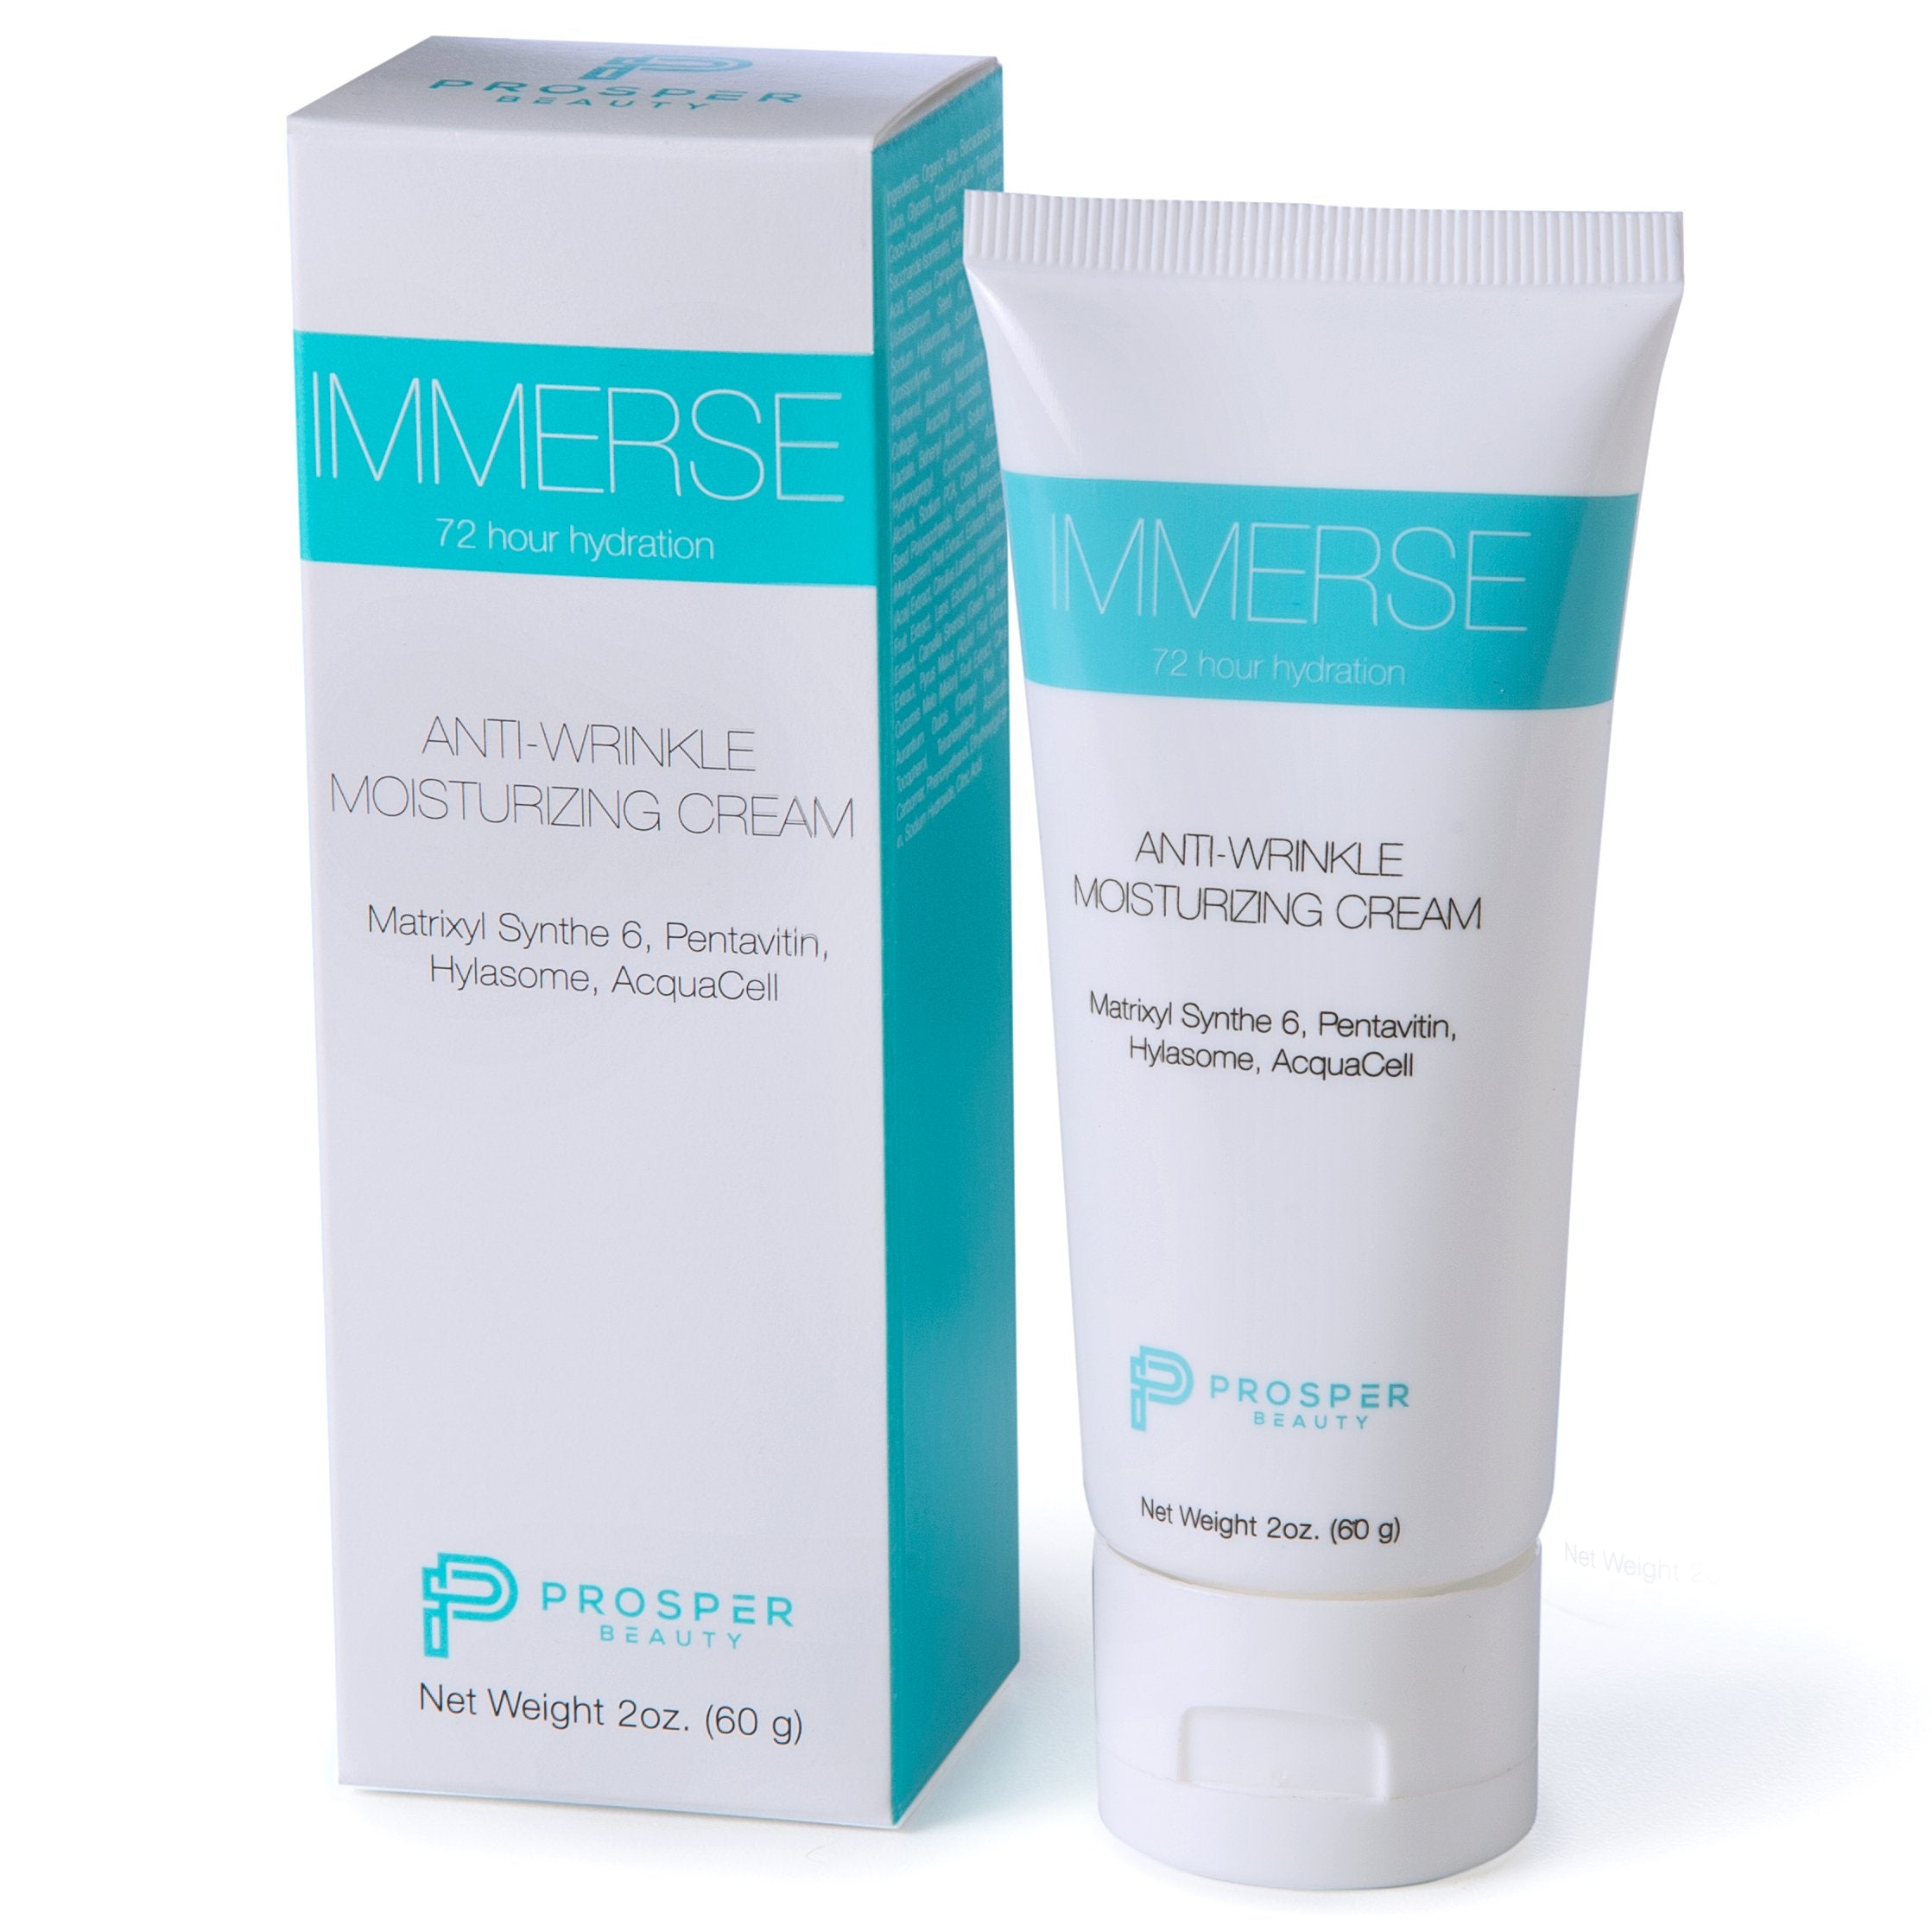 IMMERSE by Prosper Beauty (Anti-Wrinkle Moisturizing Cream)